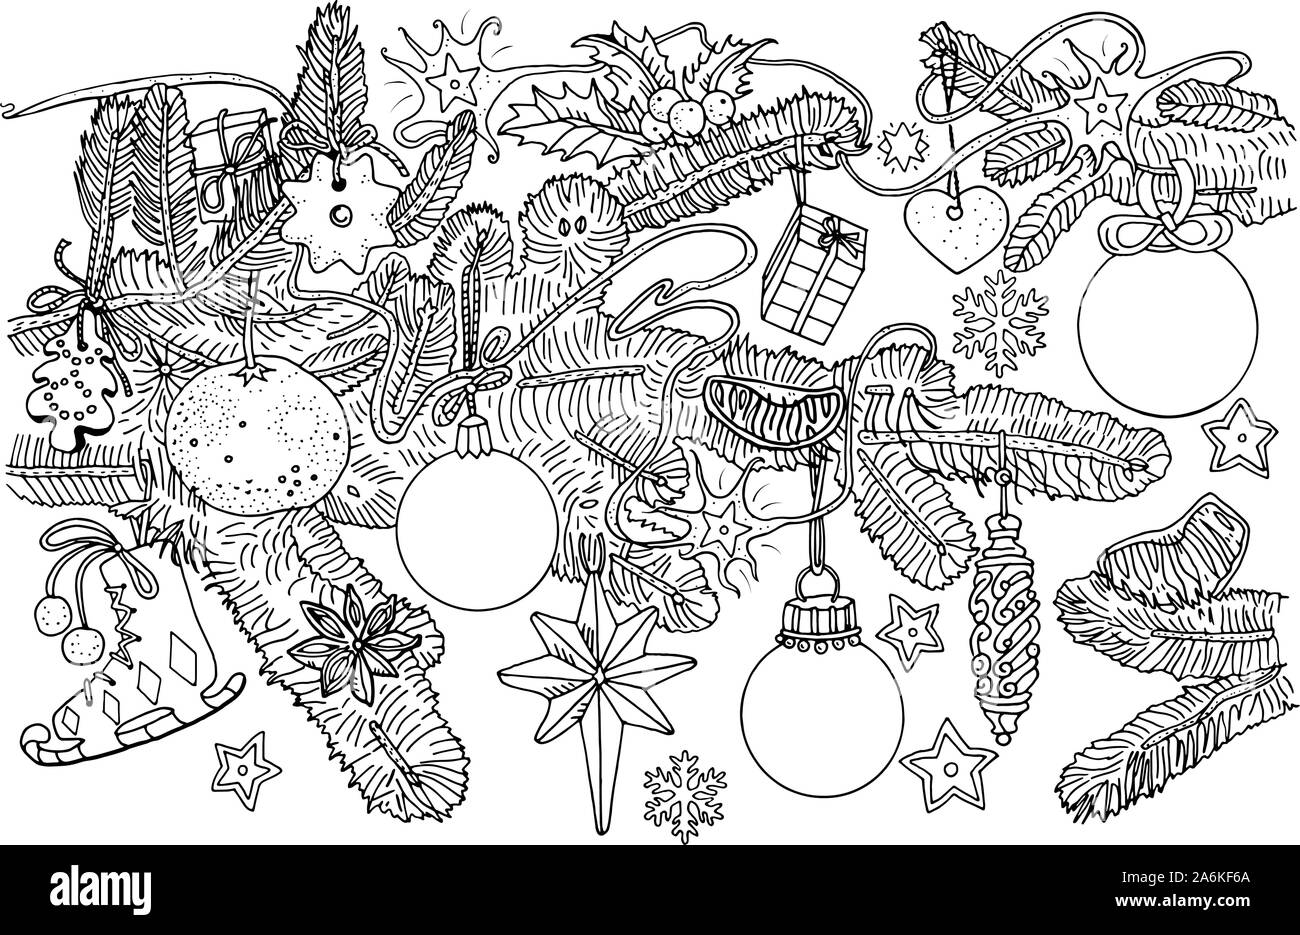 Abete rami e le decorazioni di Natale, palline, biscotti, frutta, fiocchi di neve, le stelle. Doodle stile illustrazione di contorno. Biglietto di auguri, scrapbooking Illustrazione Vettoriale